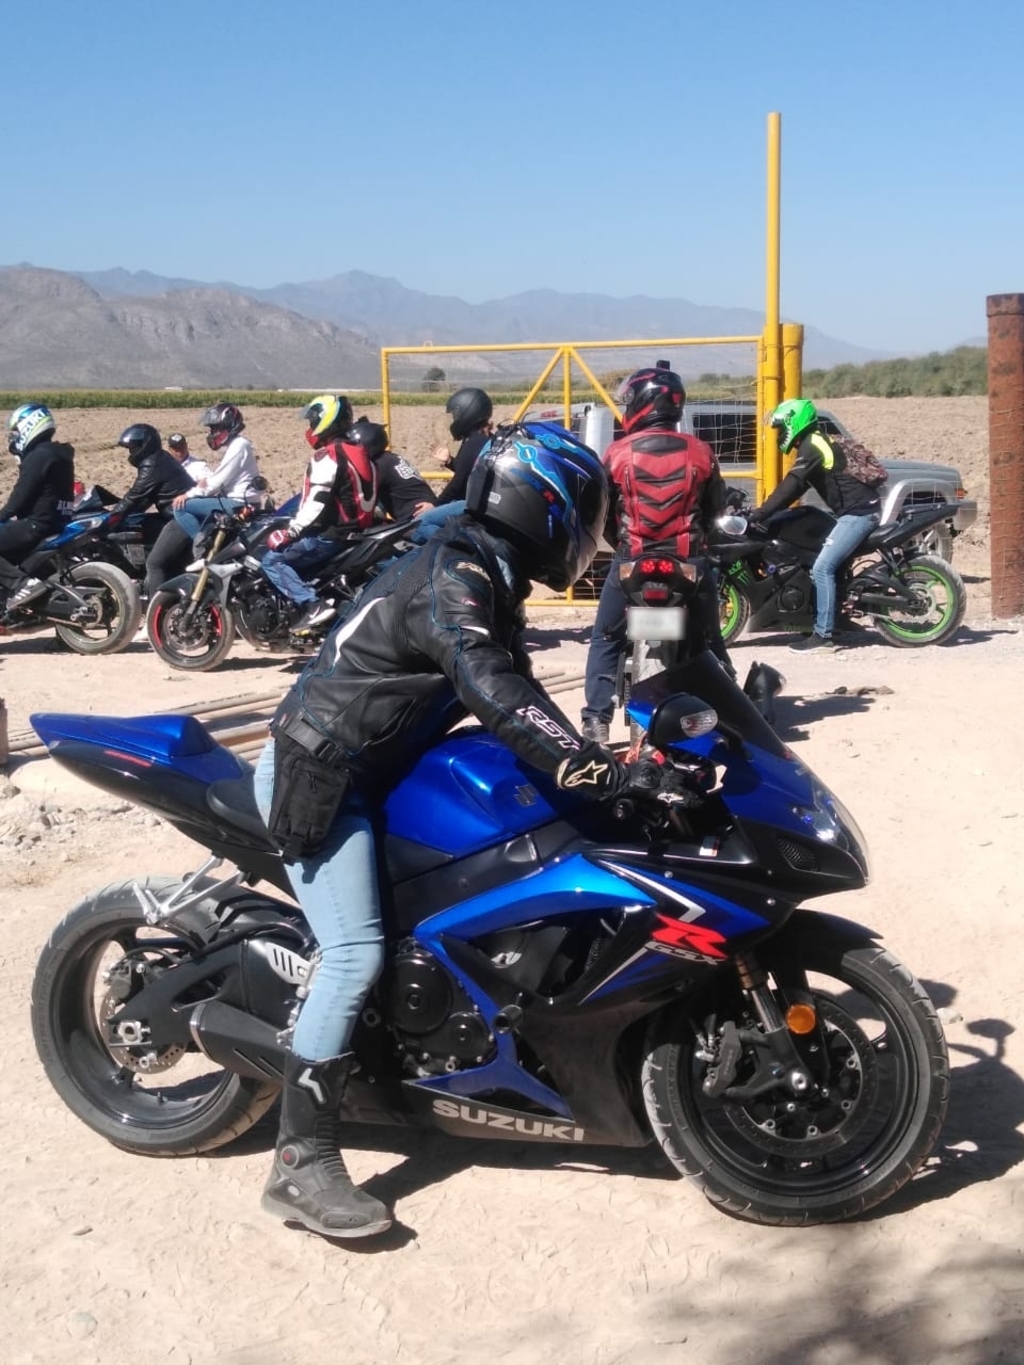 Este fin de semana más de una docena de motociclistas intentaron ingresar al Cañón de Fernández, según autoridades municipales.